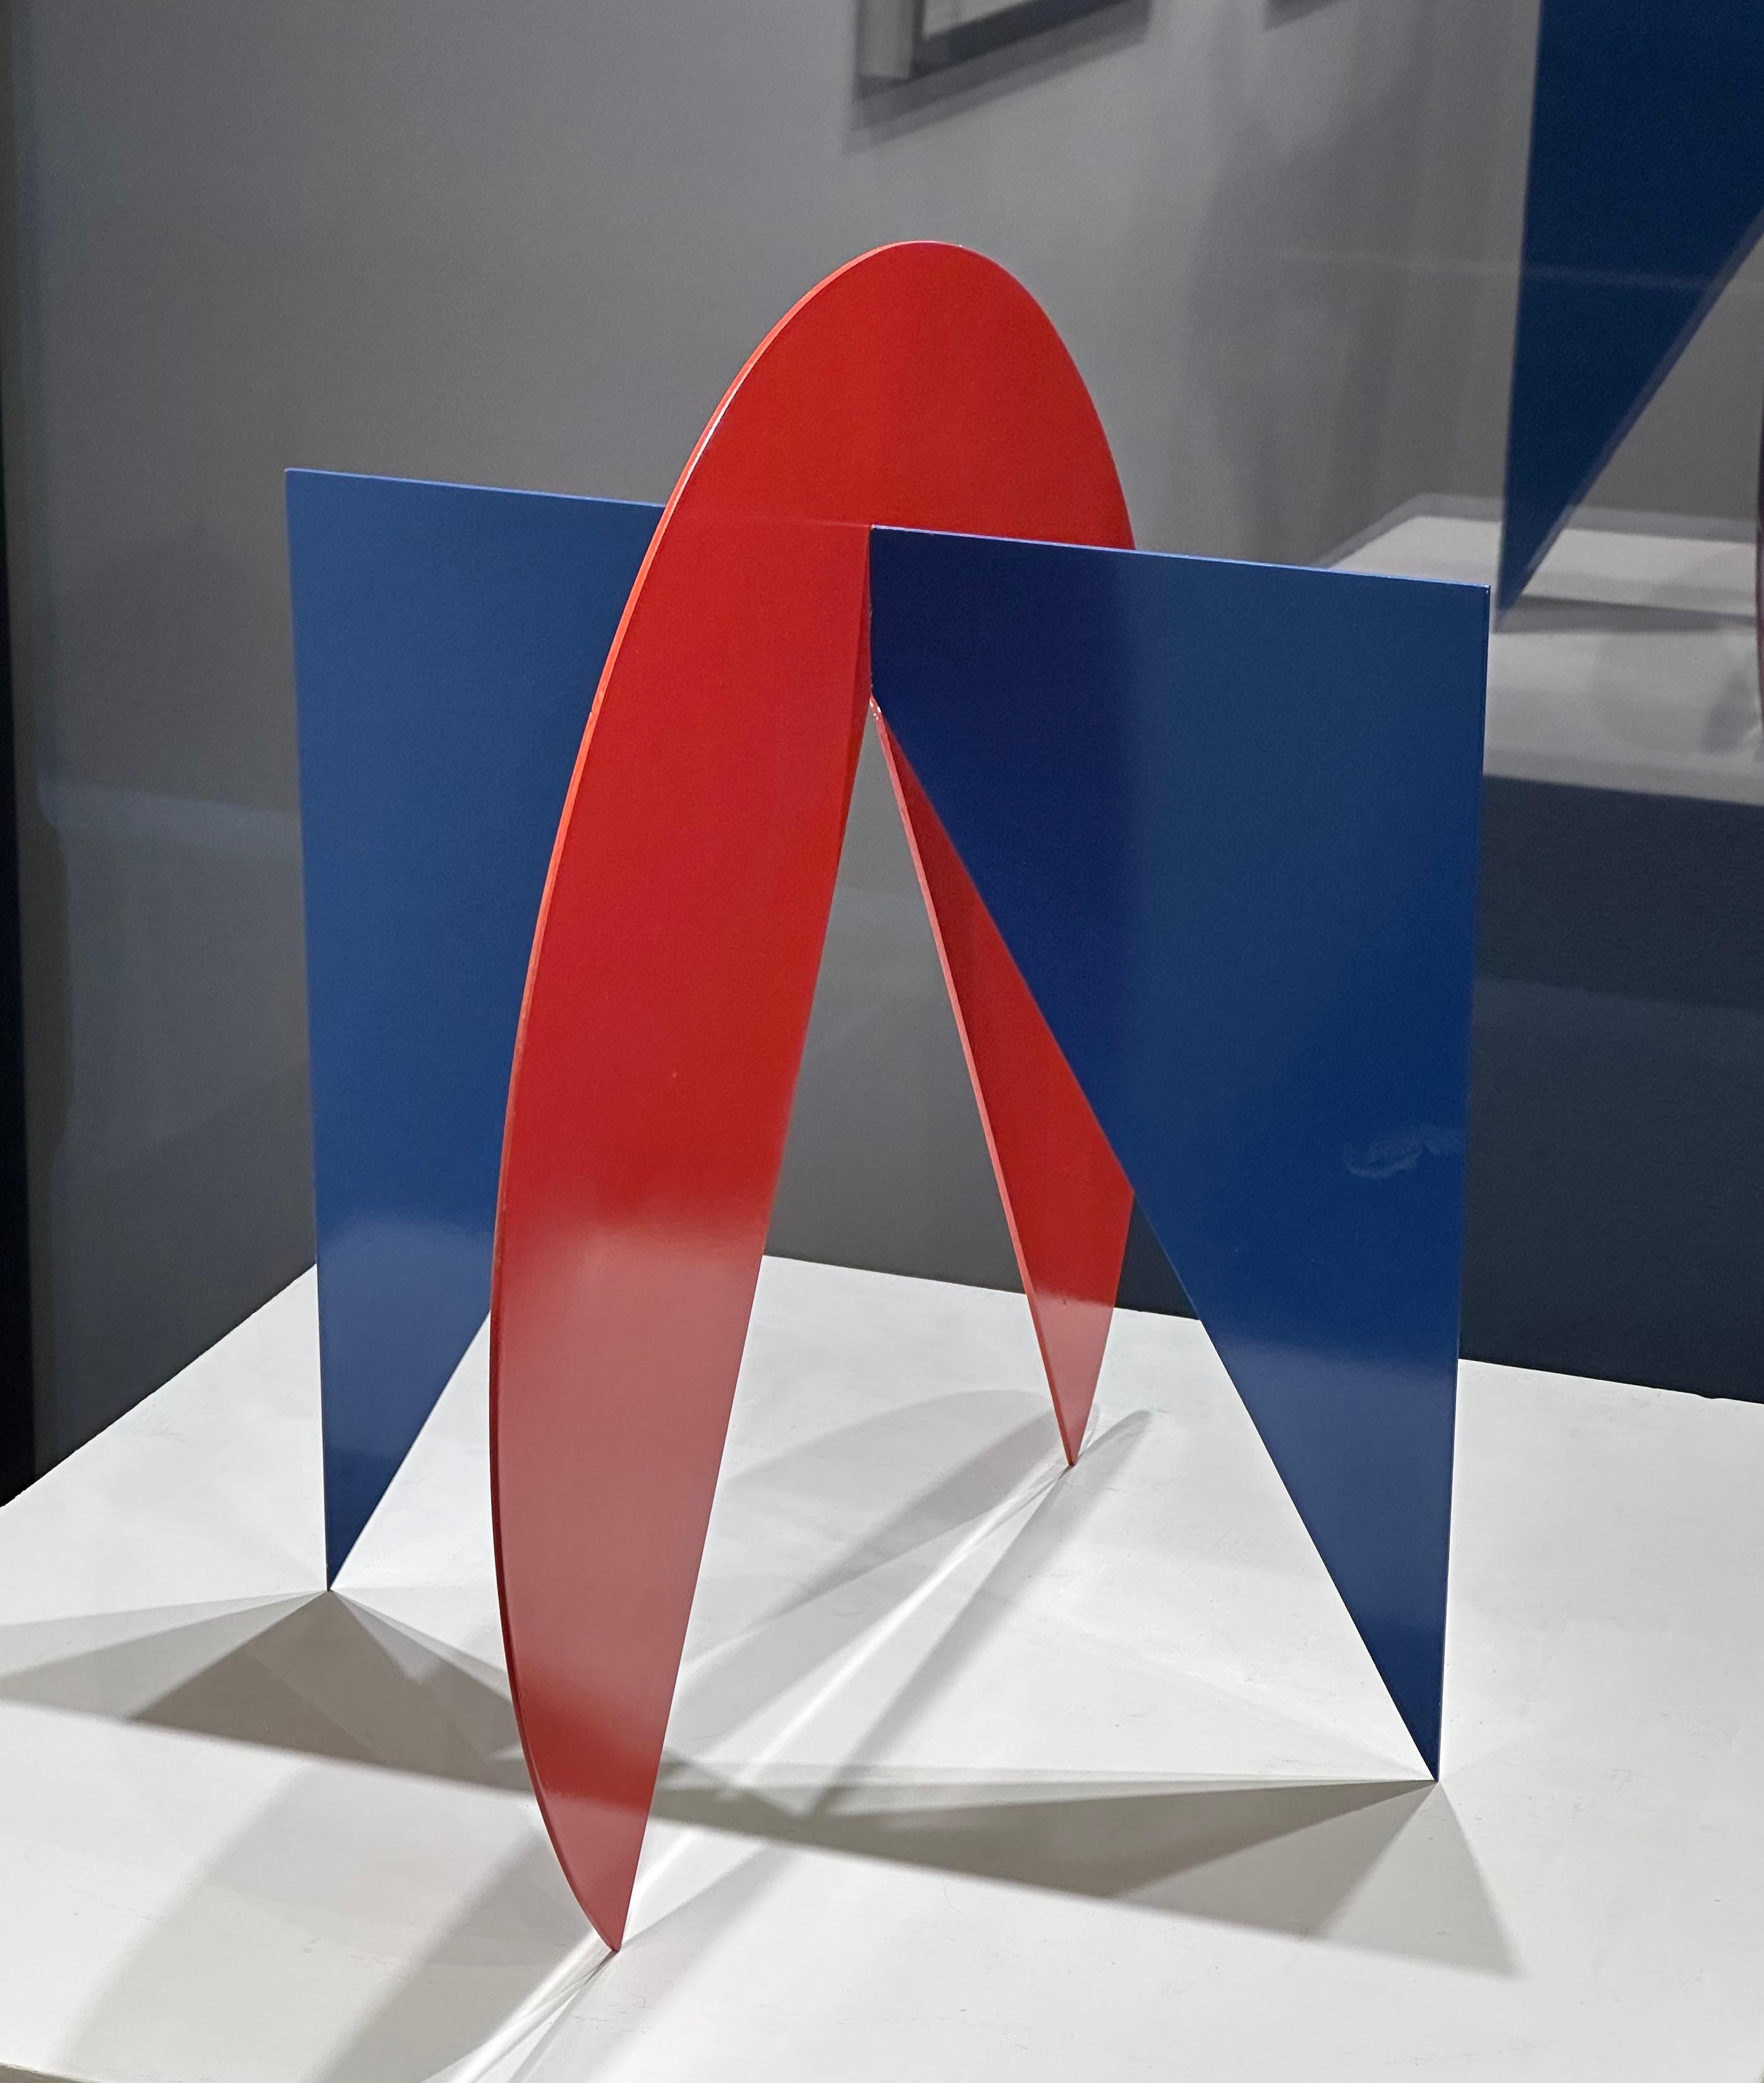 Ingo Glass Abstract Sculpture – Kreis + Quadratische Umrandung der Negativen Pyramide